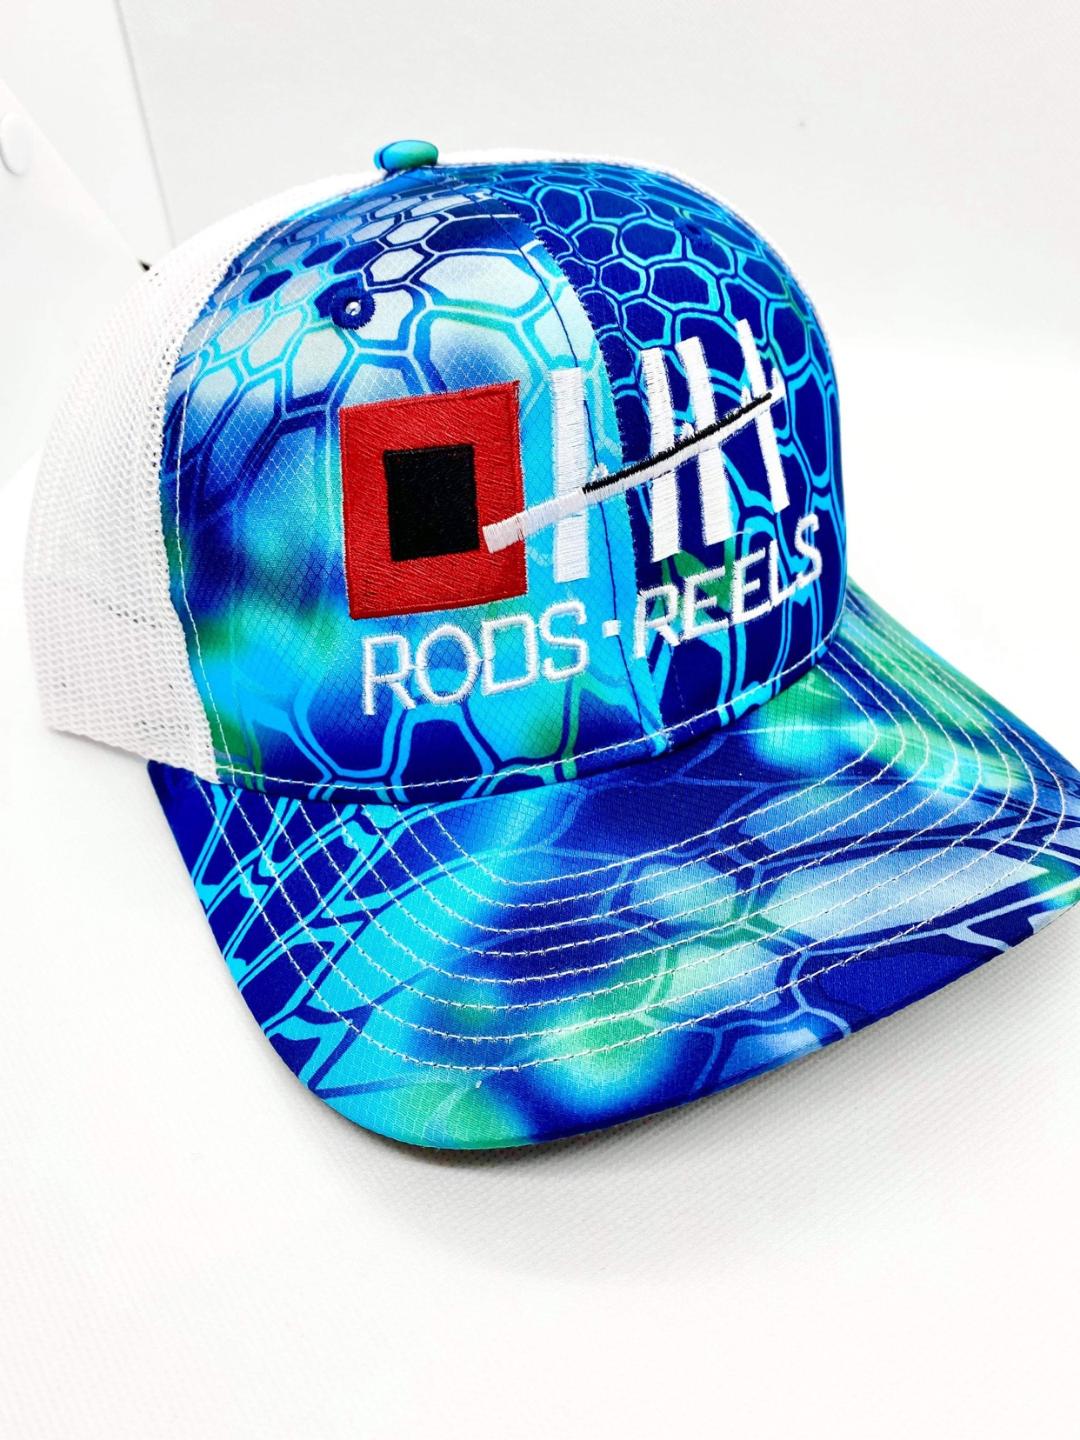 Pontis Kryptic HH Rods Reels Hat